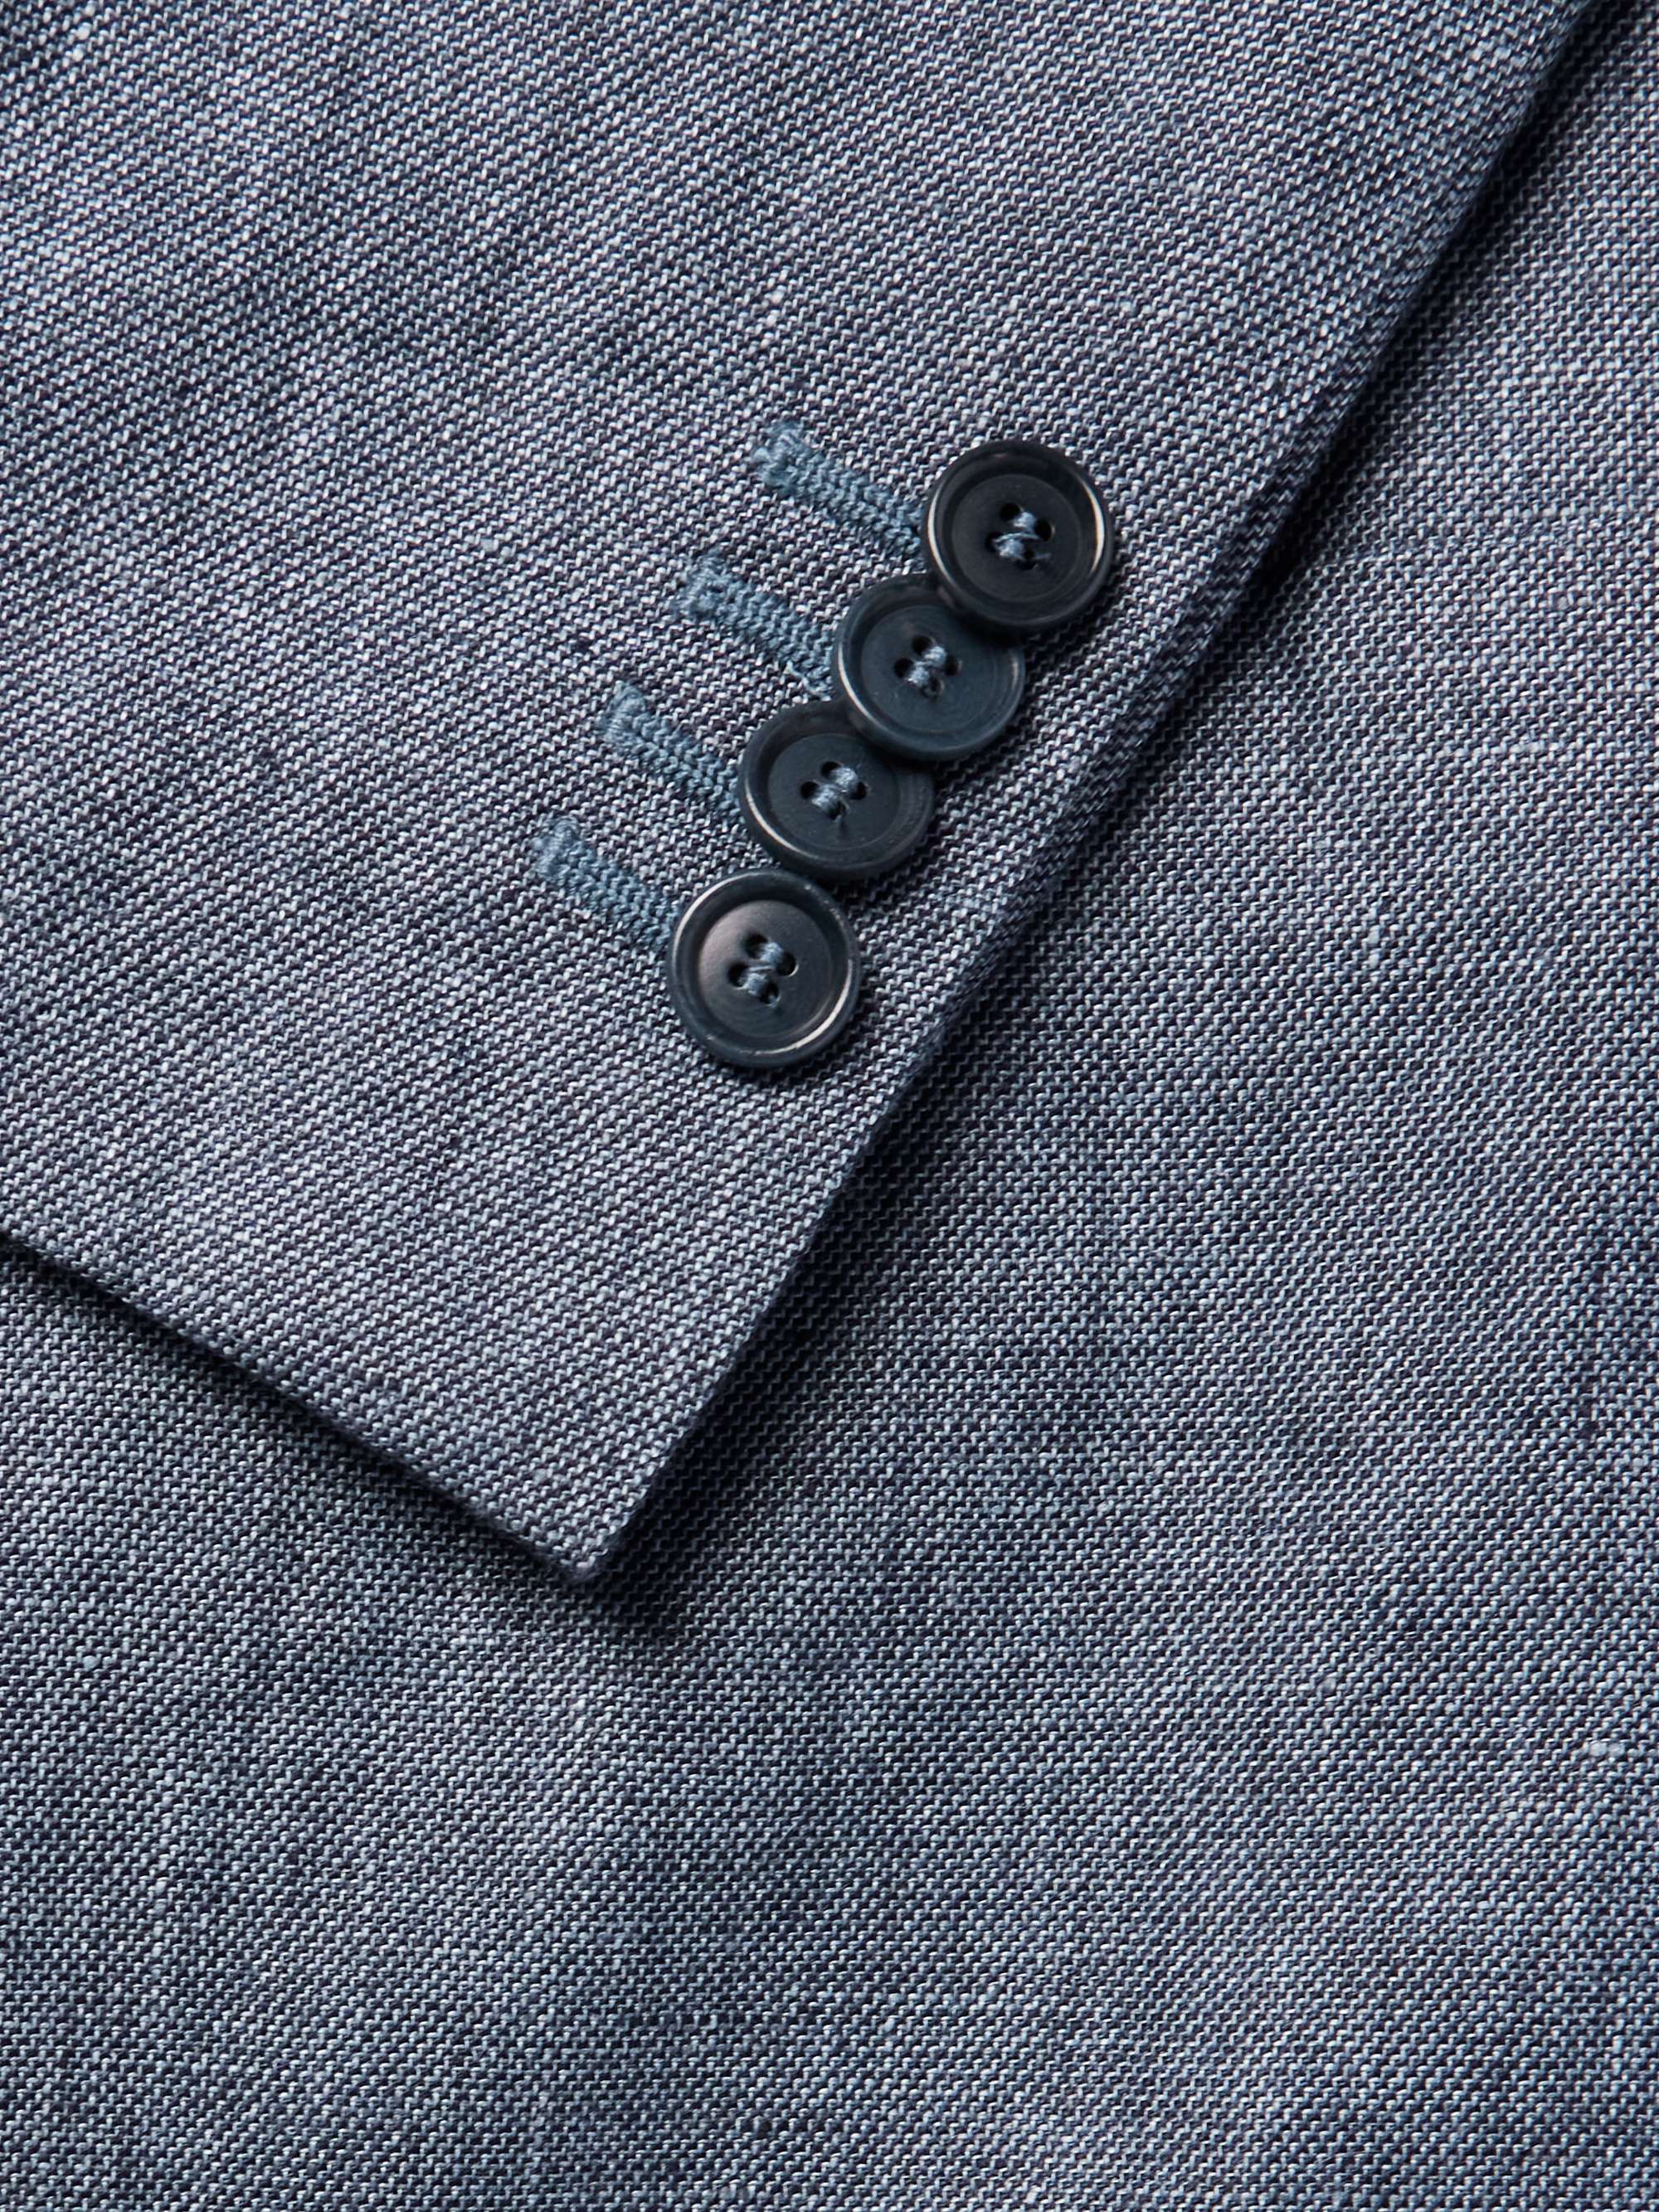 DE PETRILLO Slim-Fit Double-Breasted Linen Suit Jacket for Men | MR PORTER